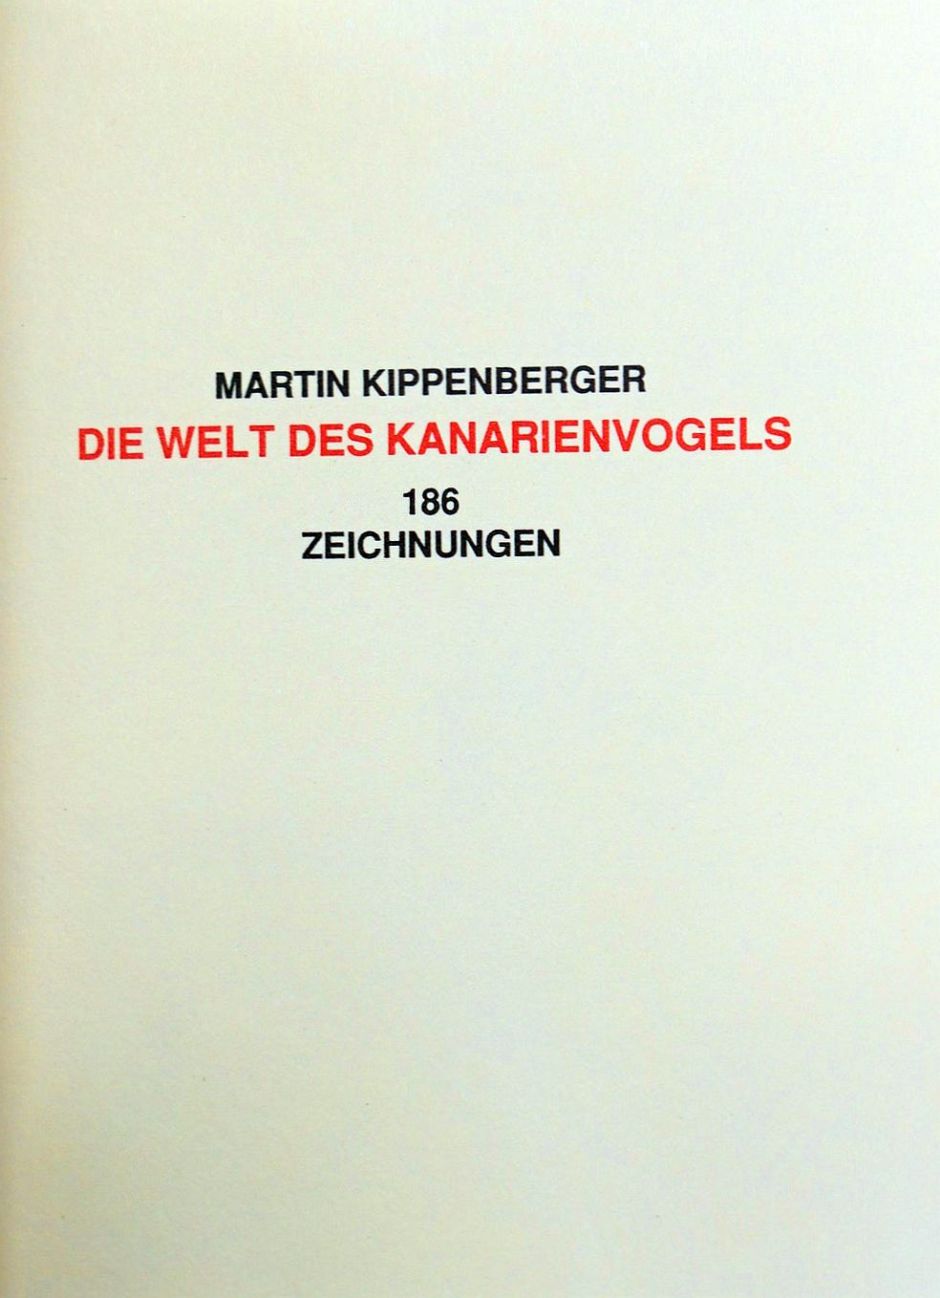 Lot 3252, Auction  115, Kippenberger, Martin, Die Welt des Kanarienvogels